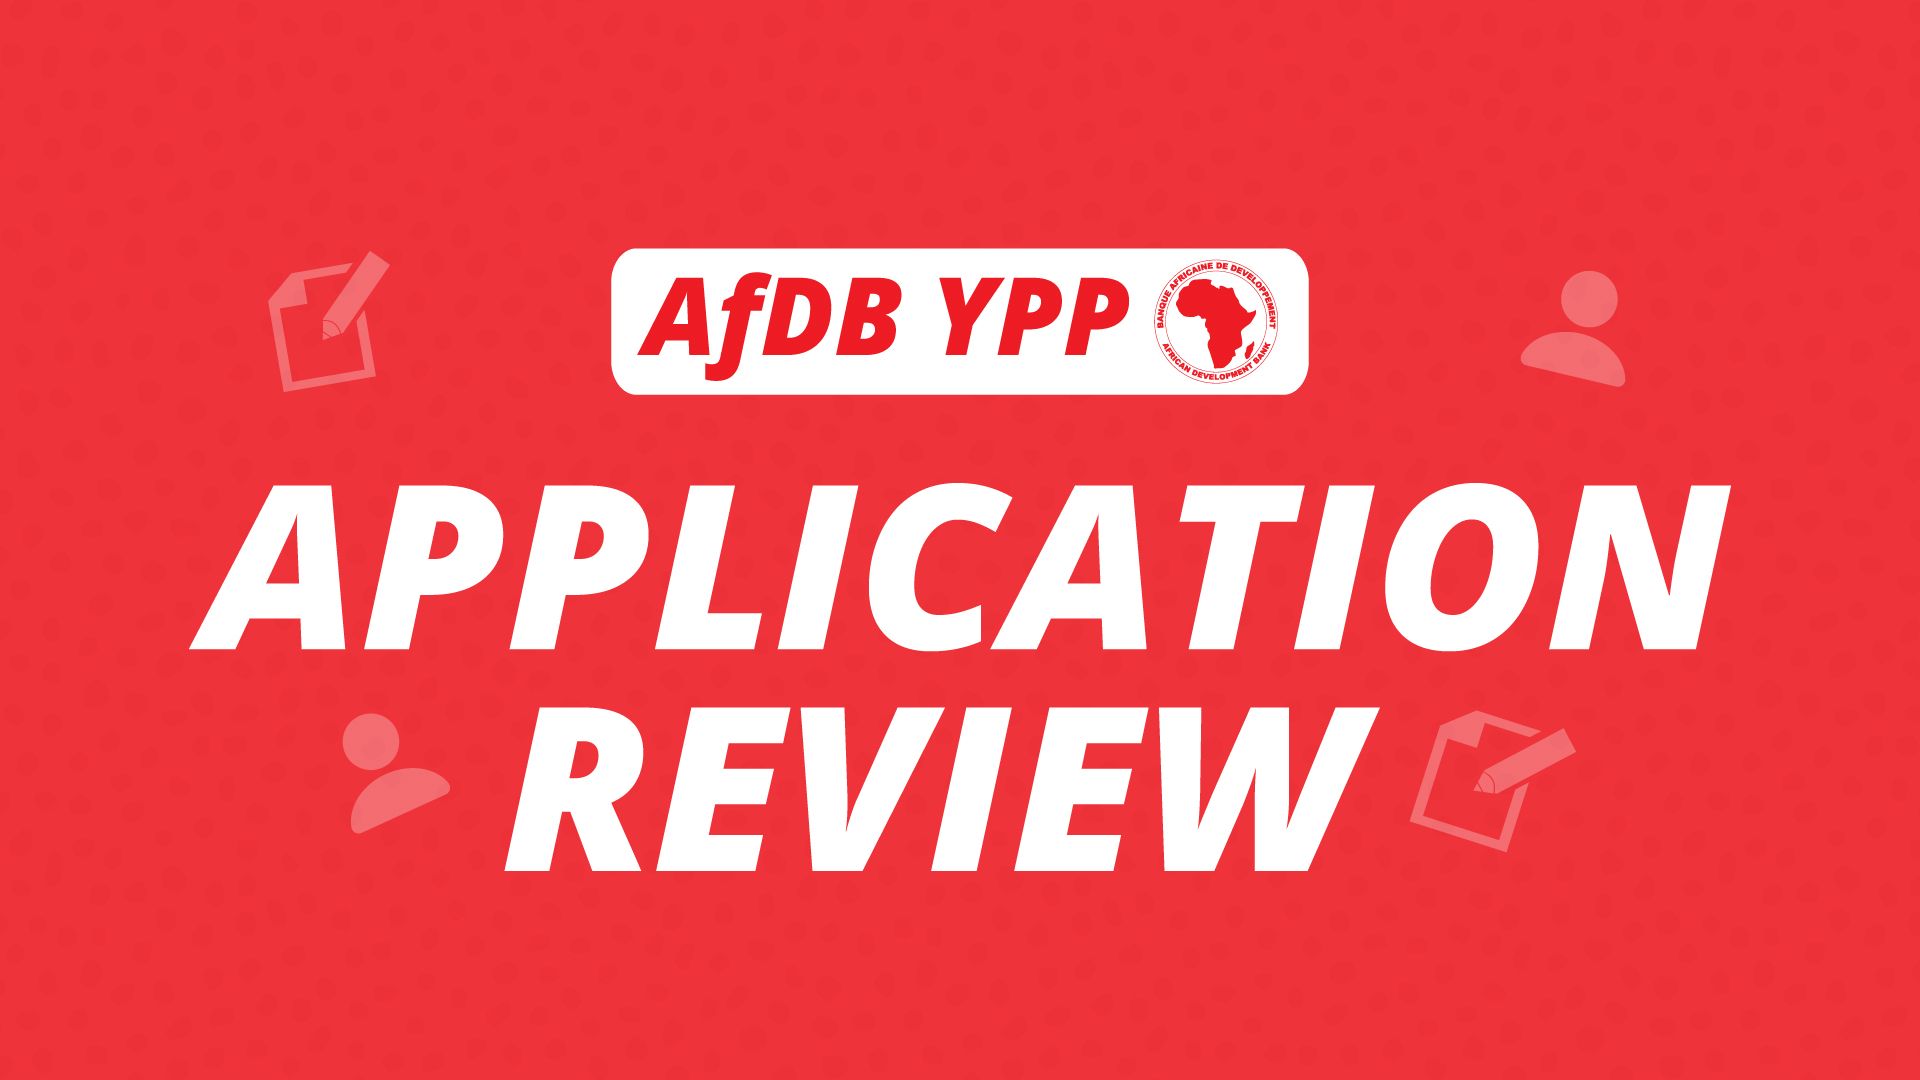 AfDB-App-Review